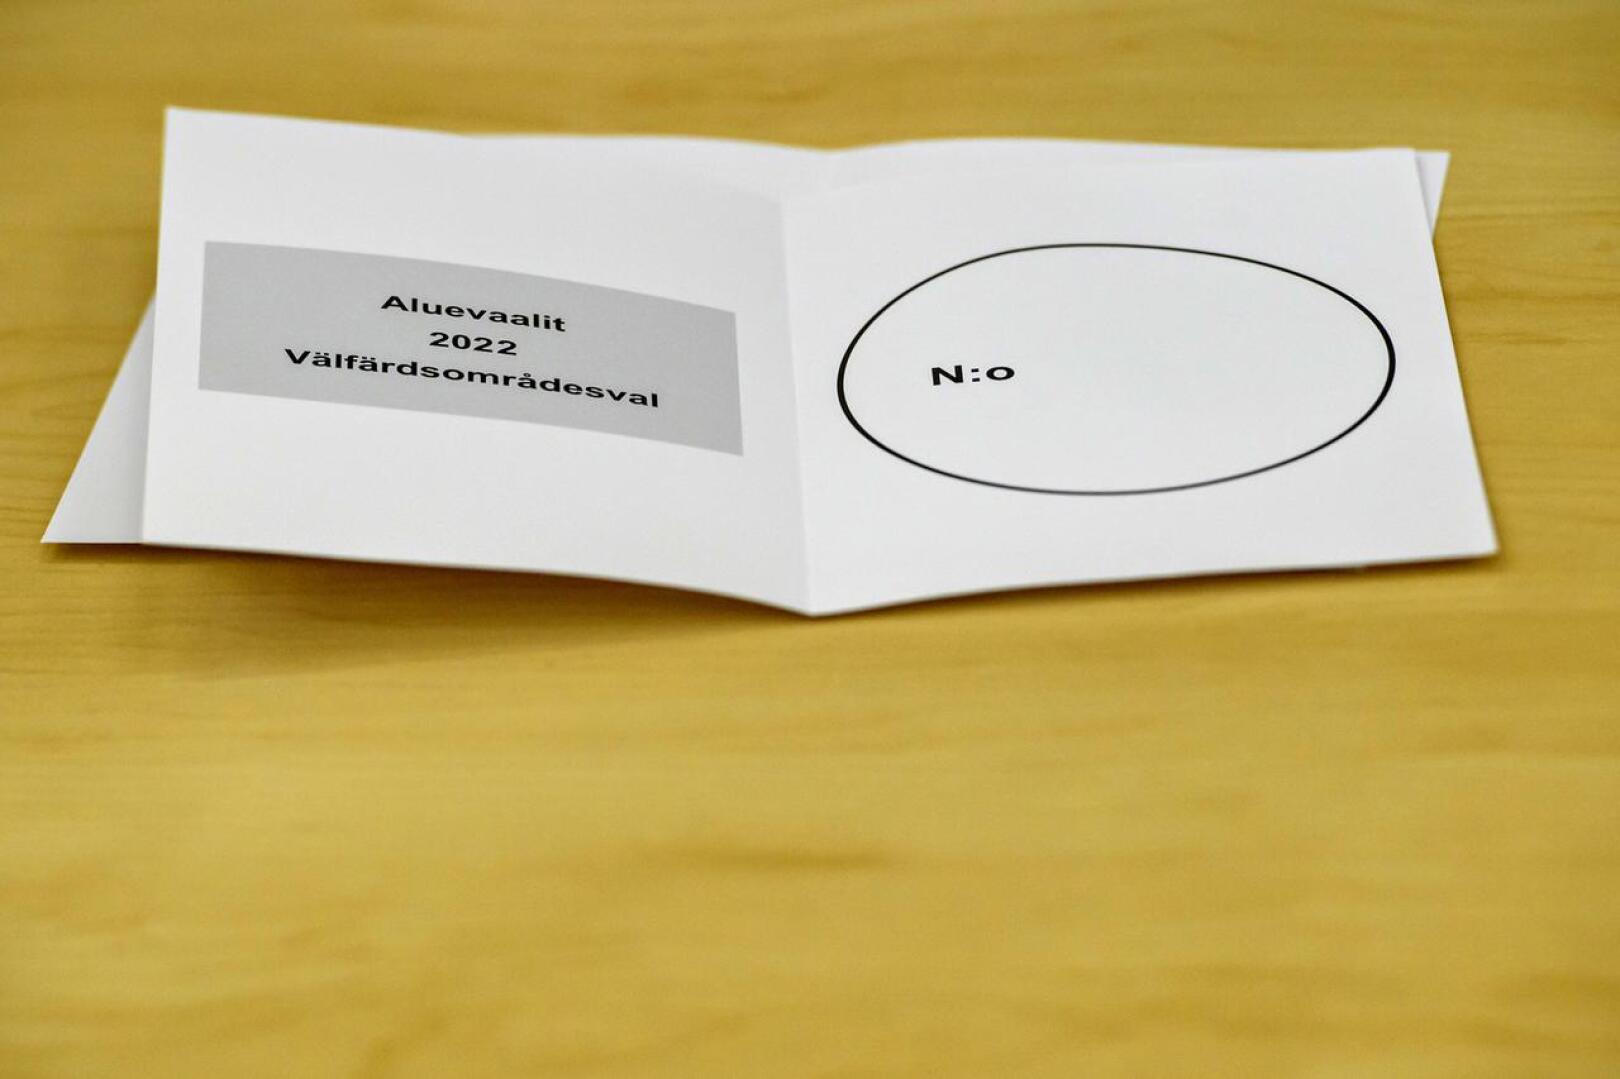 Keski-Pohjanmaalla suurin aluevaalien kampanjabudjetti oli kooltaan 4 899,06 euroa.